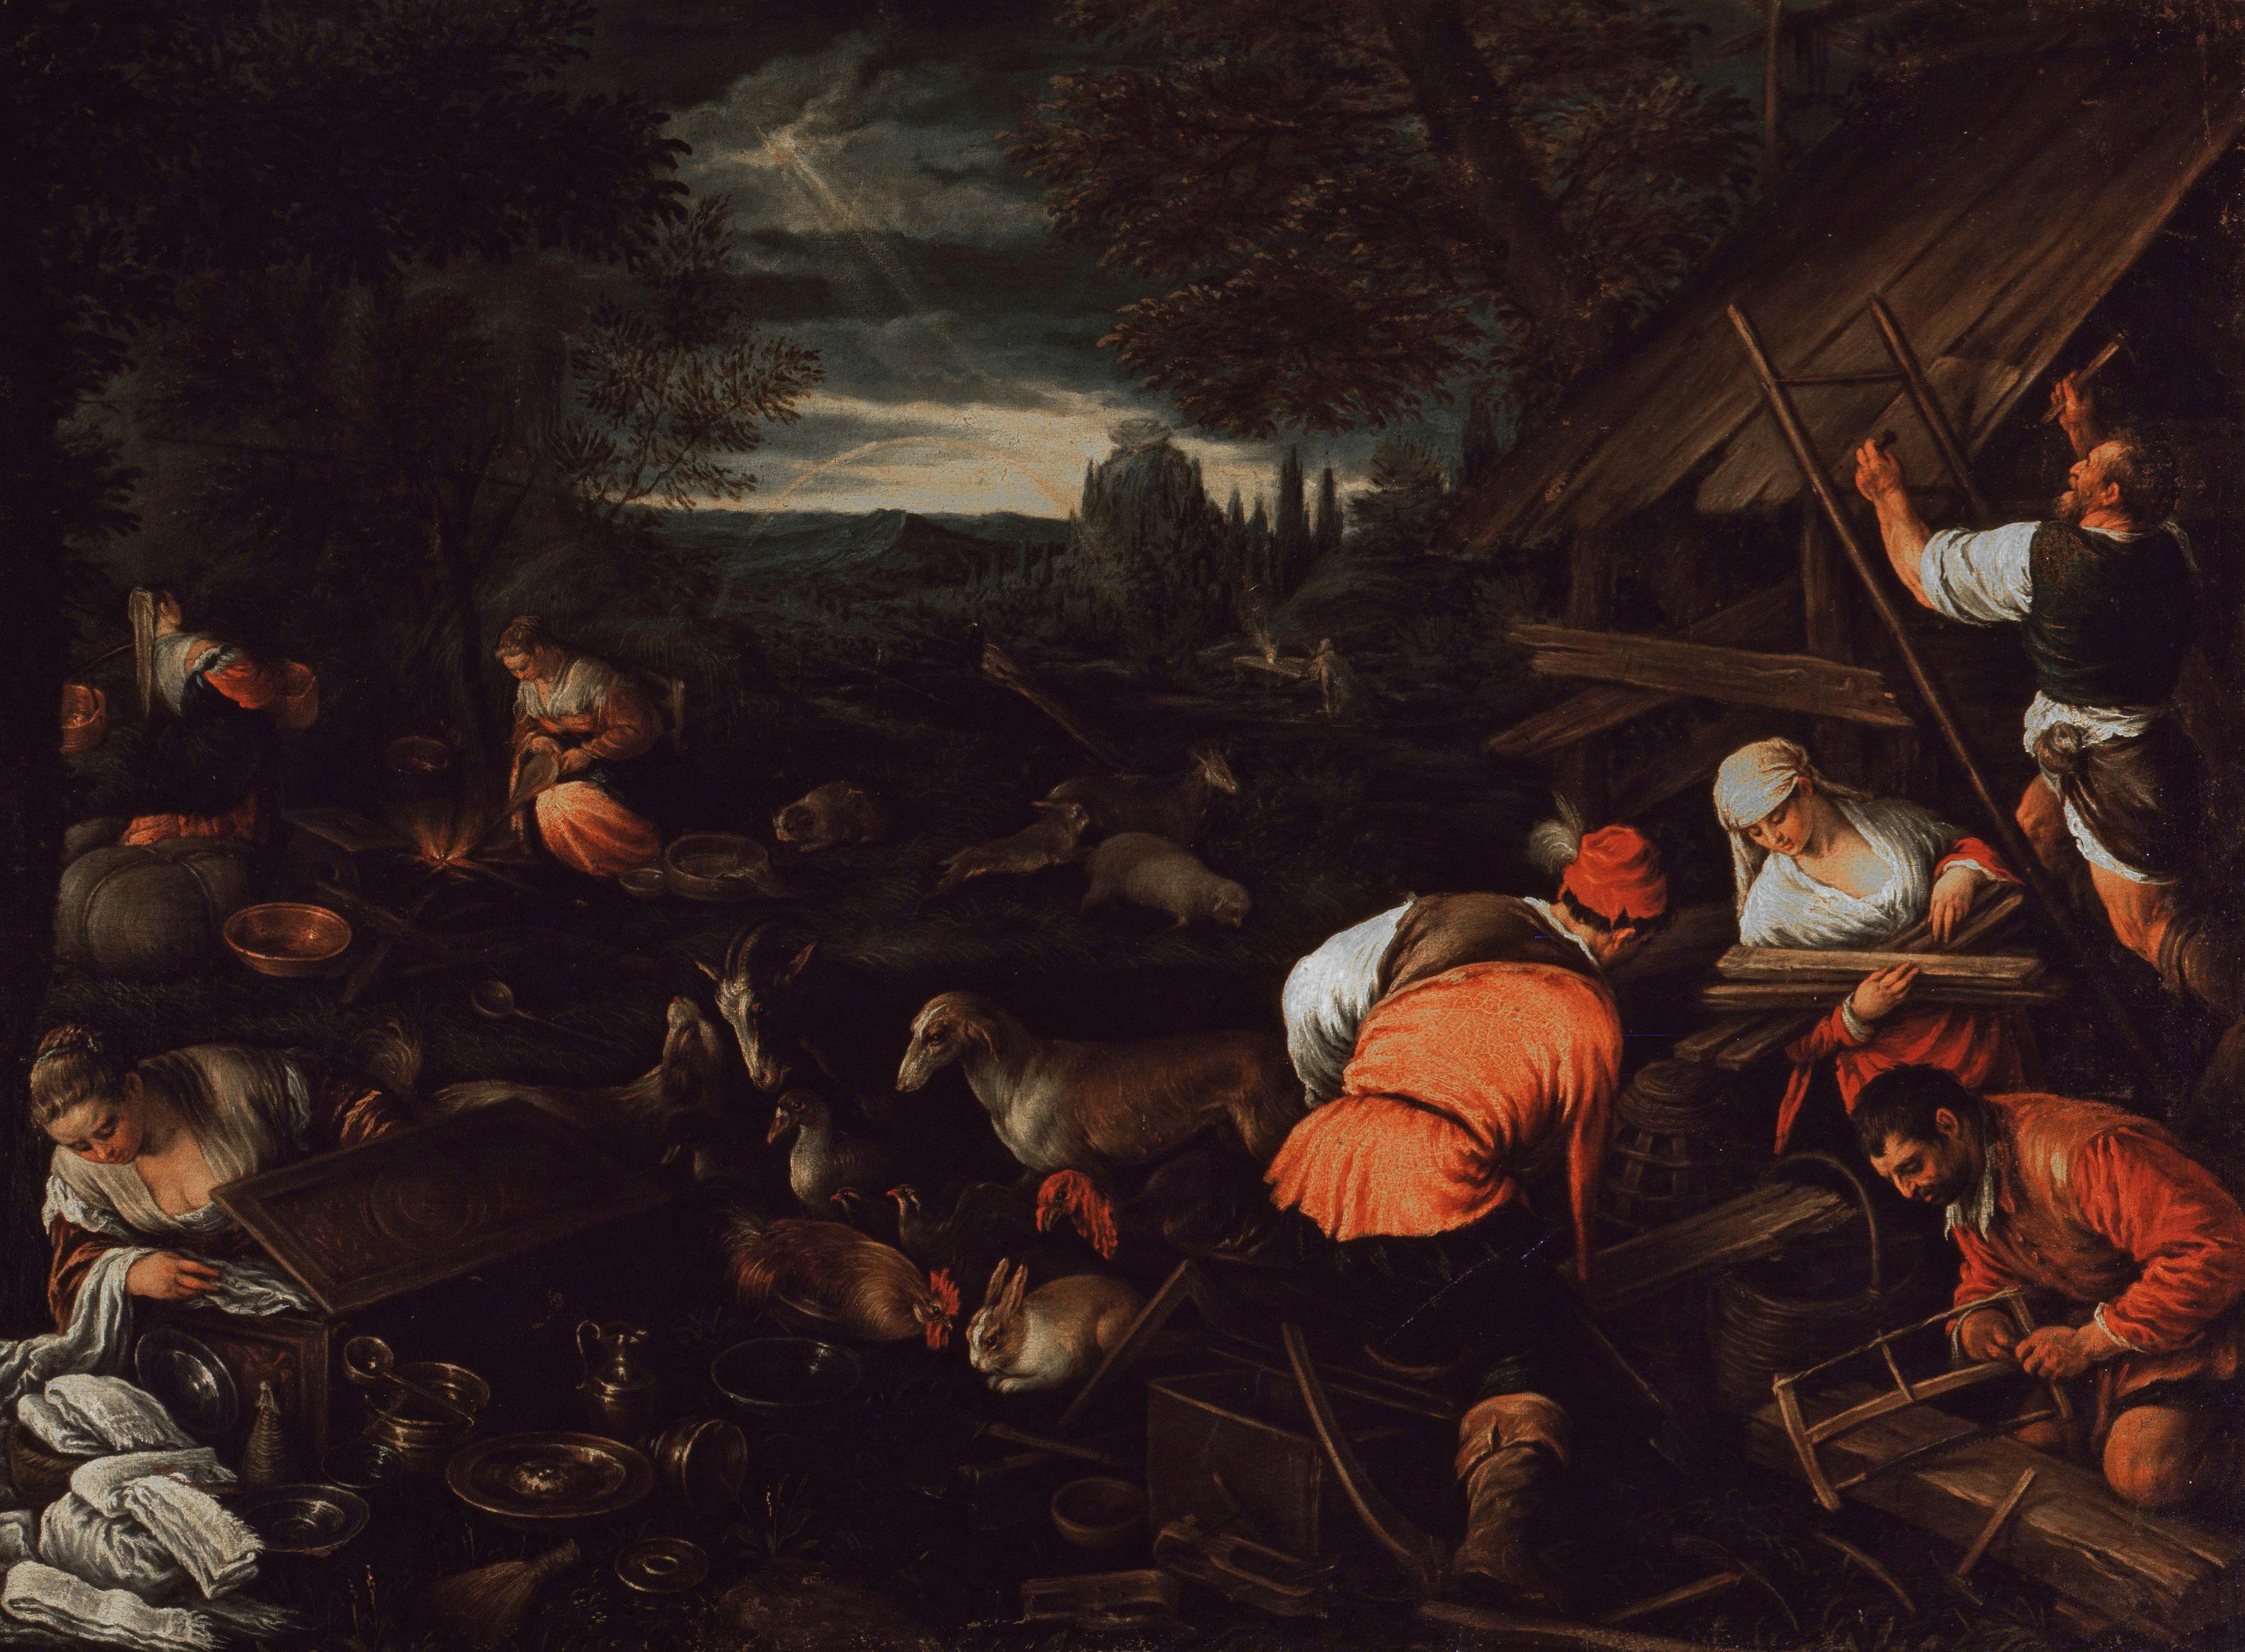 God speaks to Noah after the Flood